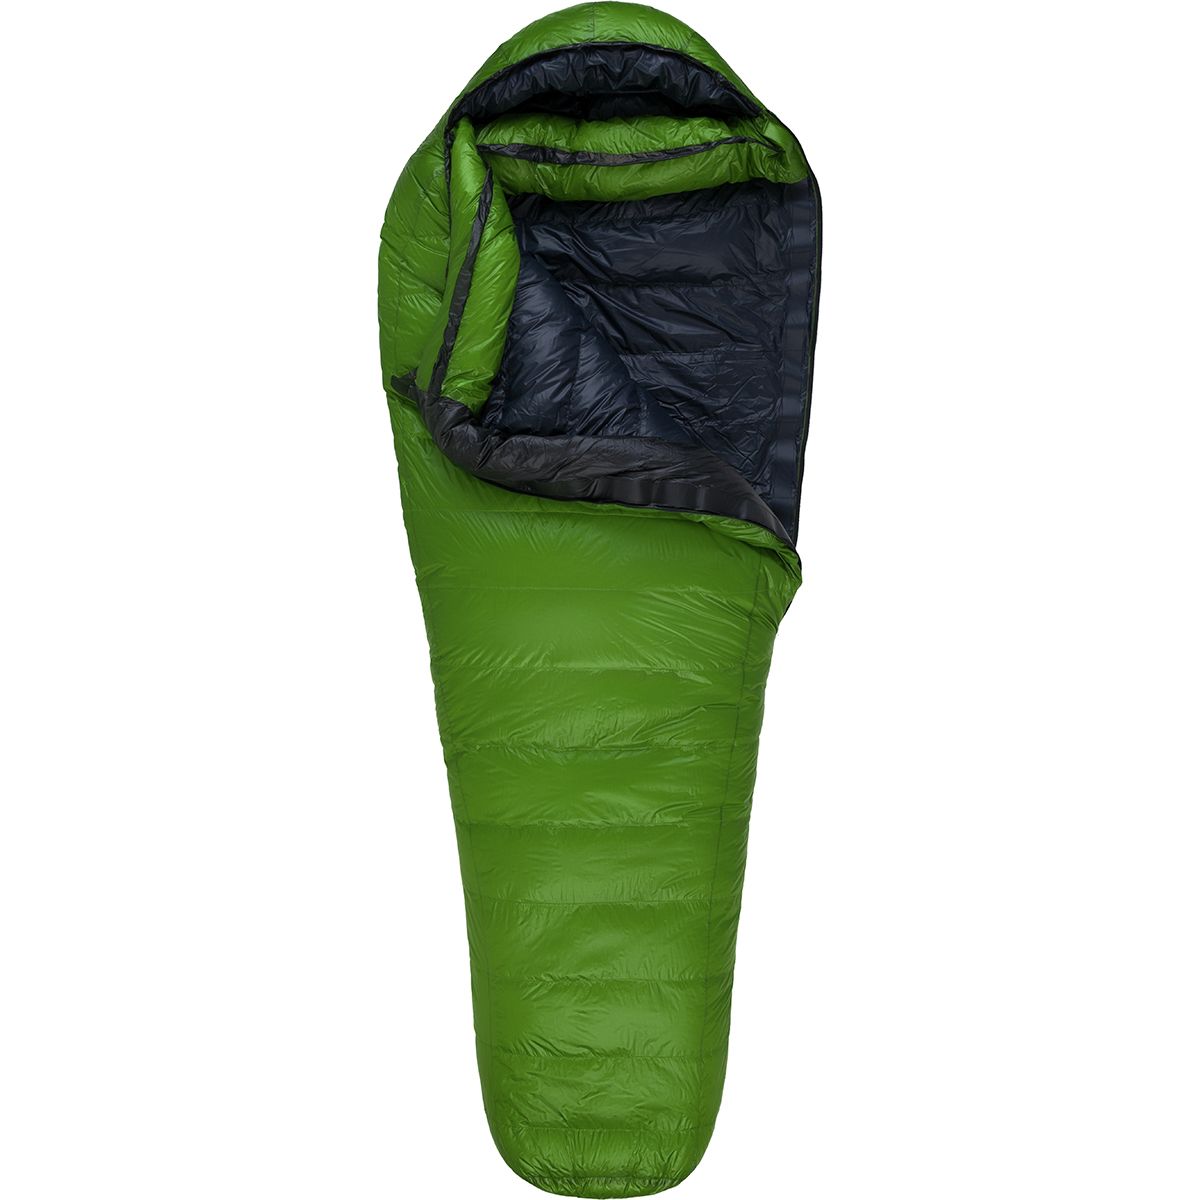 Western Mountaineering Versalite Sleeping Bag: 10 Degree 